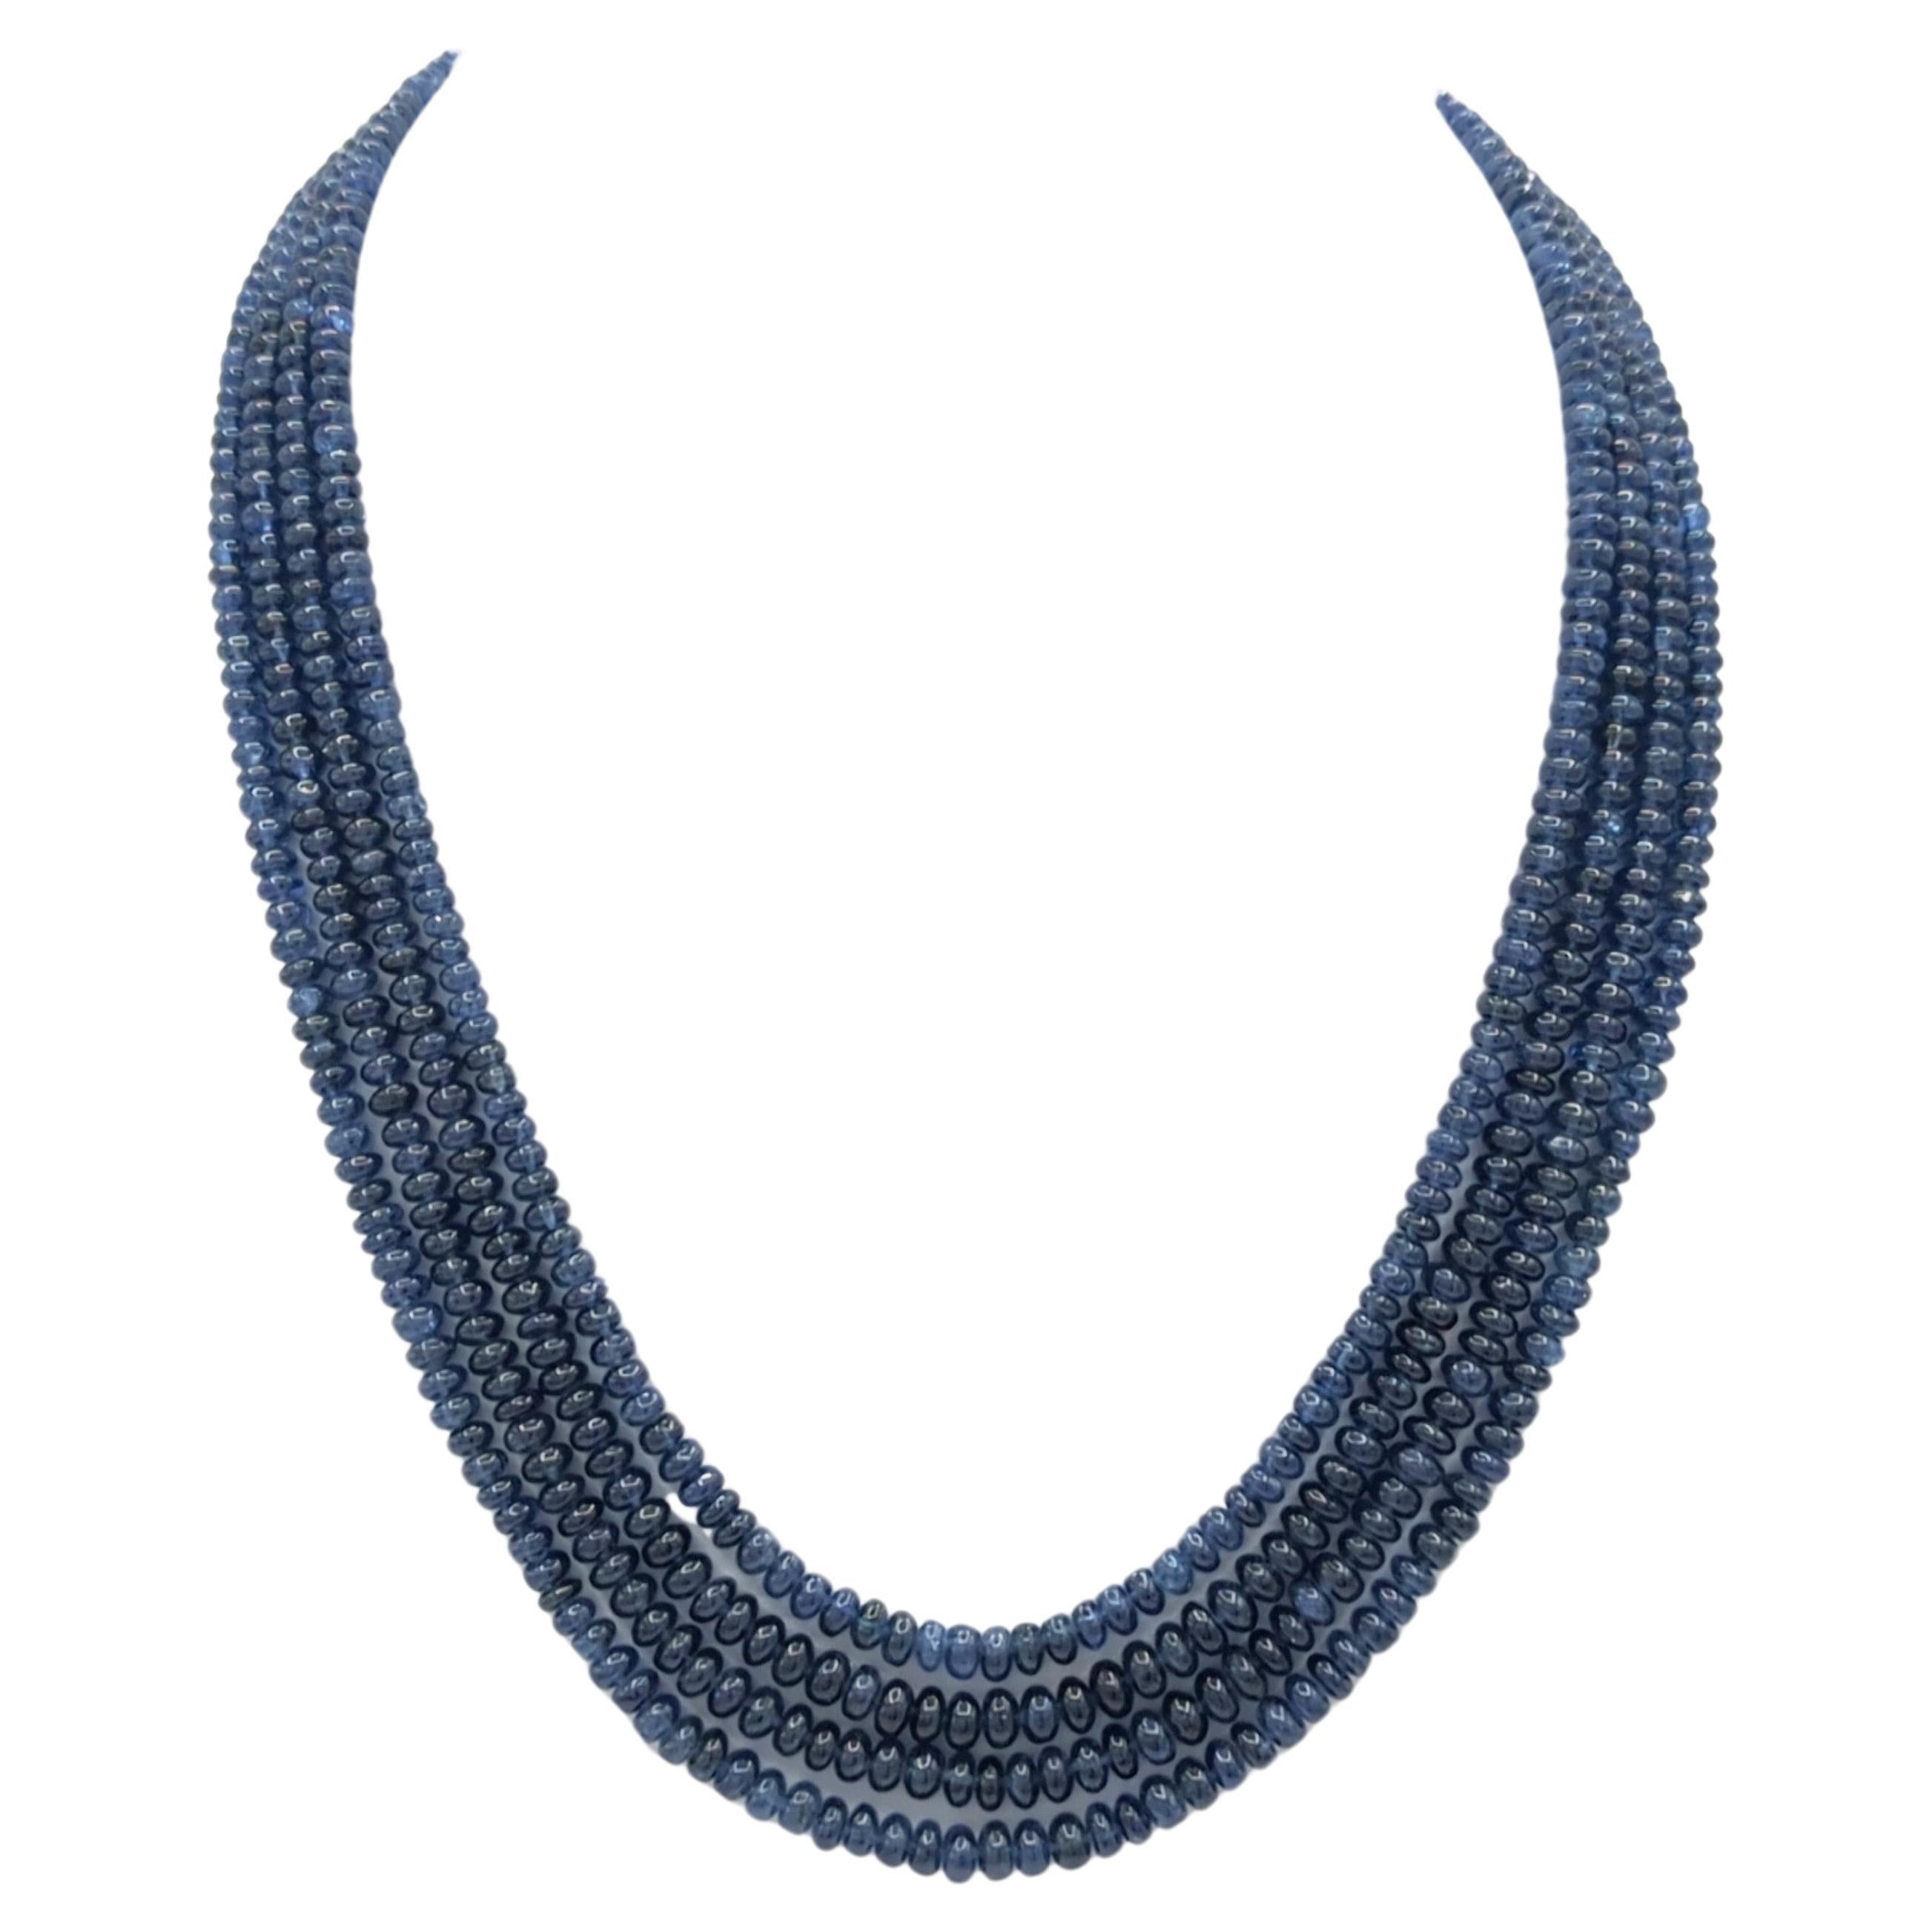 Perles de saphir bleu de Birmanie non chauffées GIA avec fermoir en platine et diamants